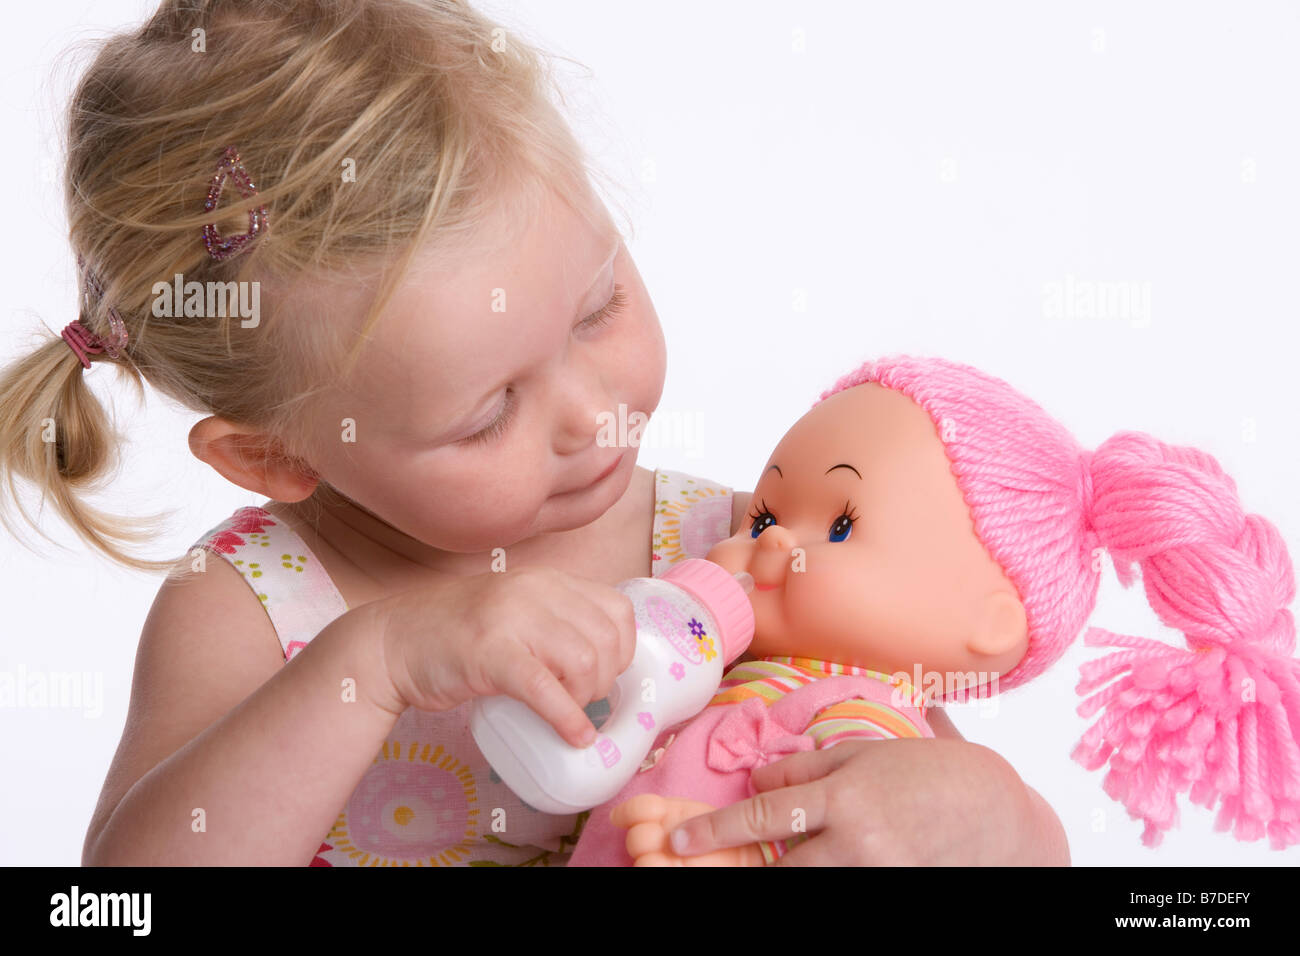 feeding doll baby